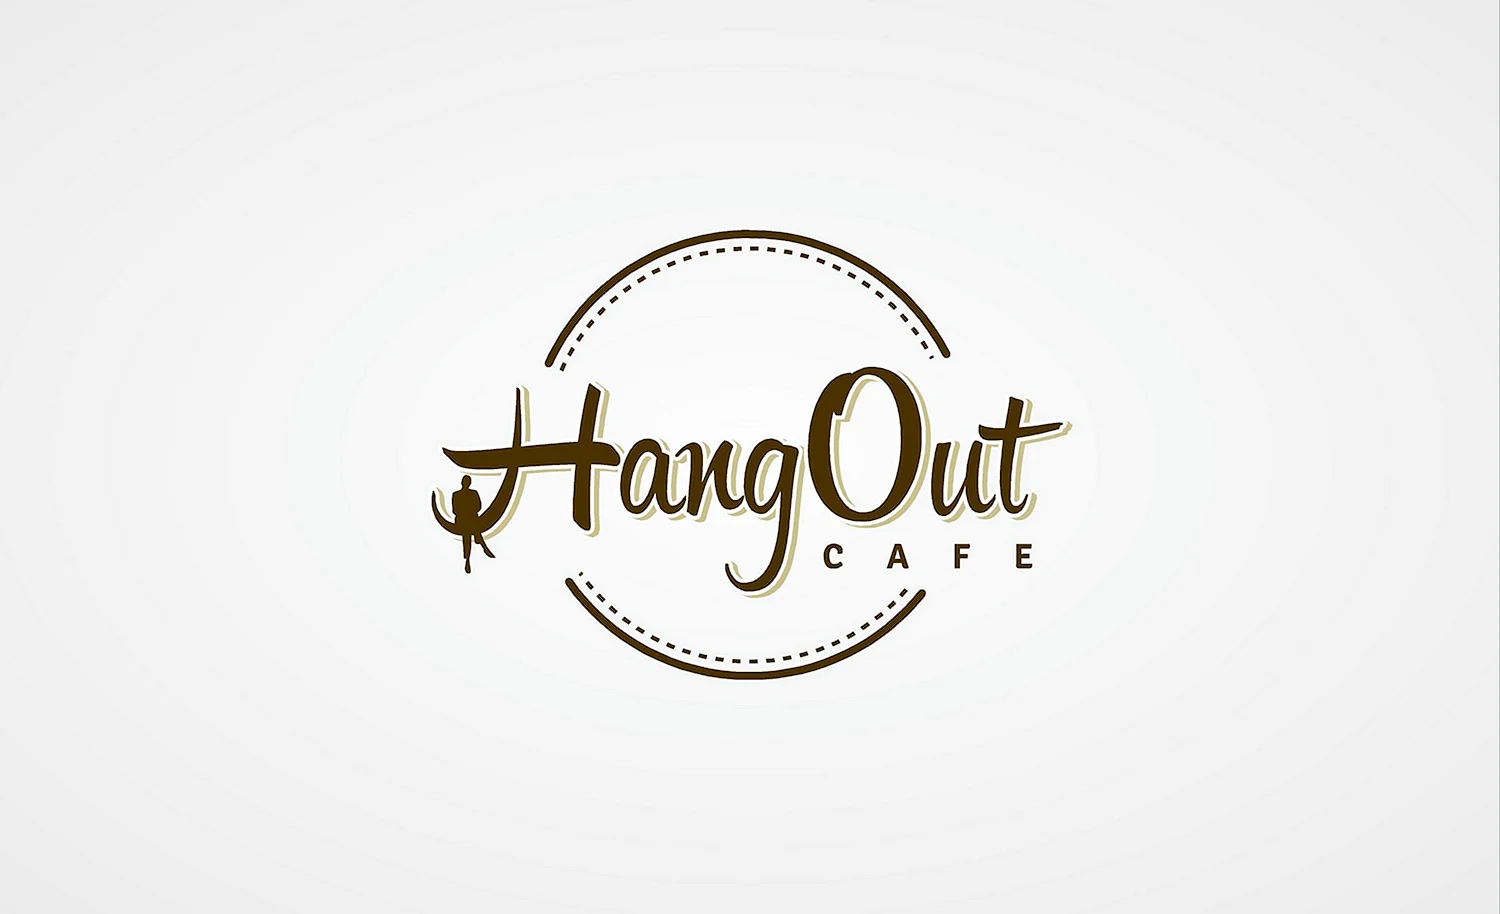 Логотипы кафе и ресторанов